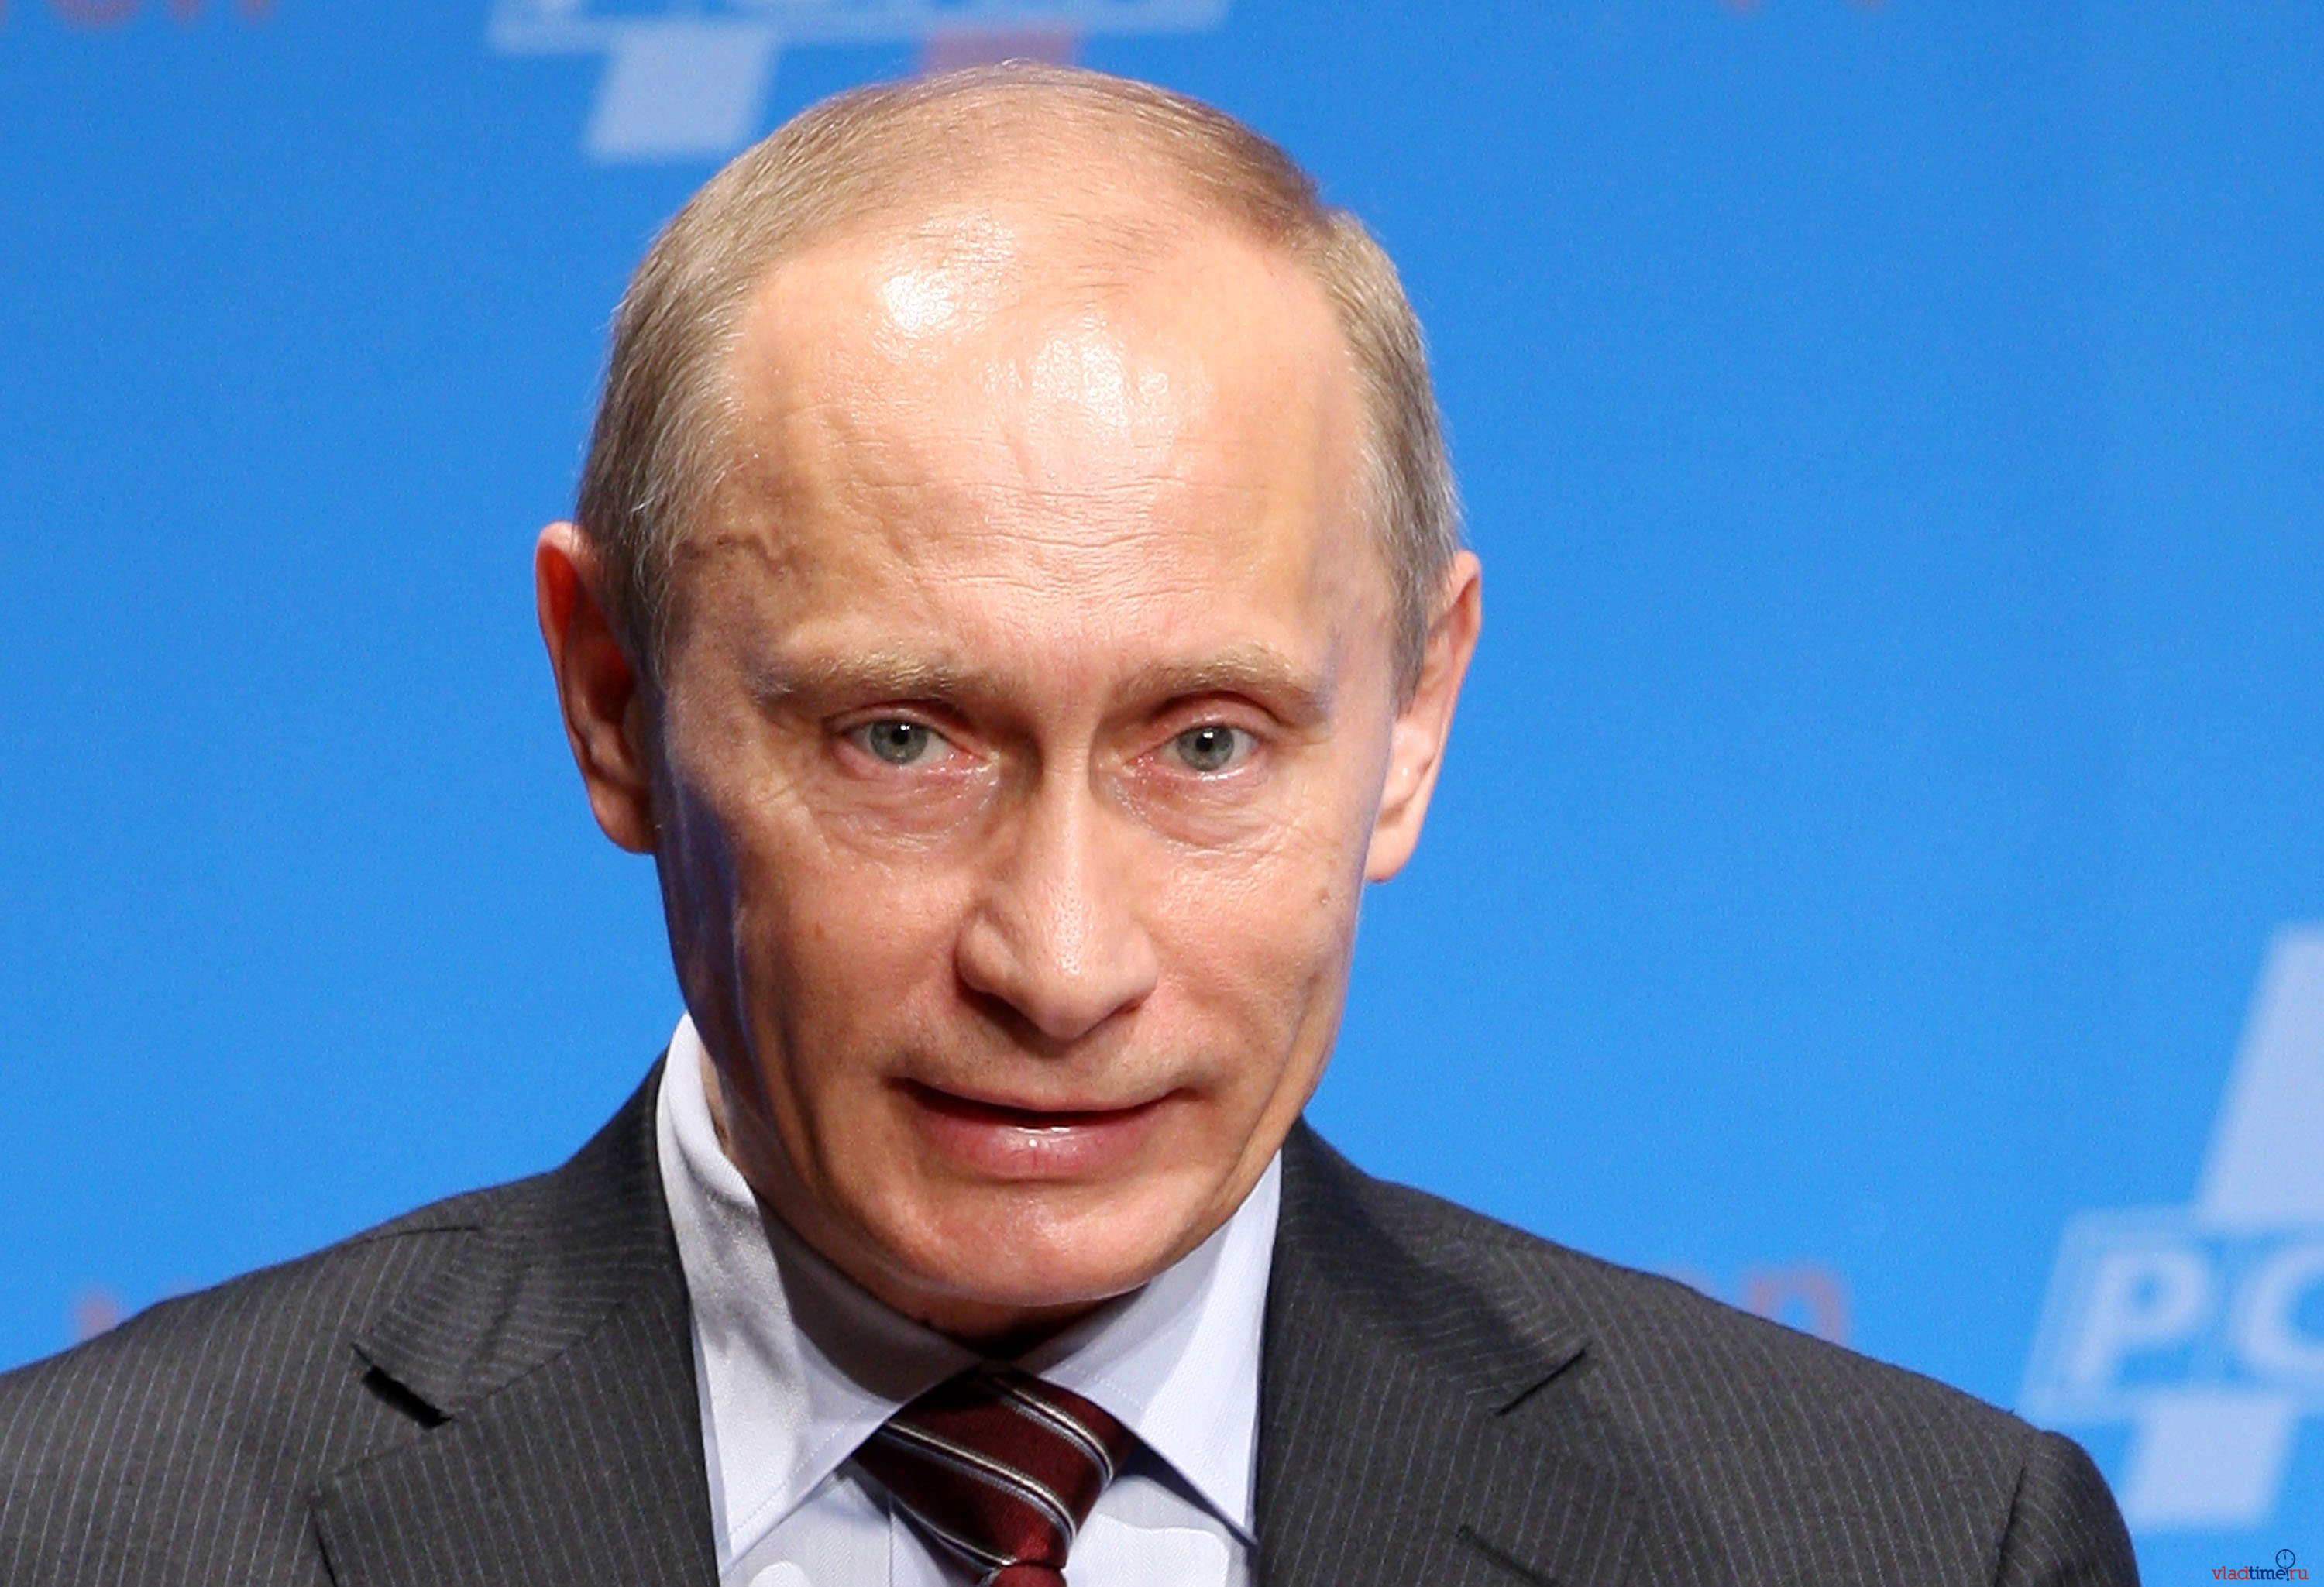 "Он не пойдет на масштабную войну", - эксперт указал на неожиданный фактор, который сдерживает Путина от волны агрессии на Донбассе